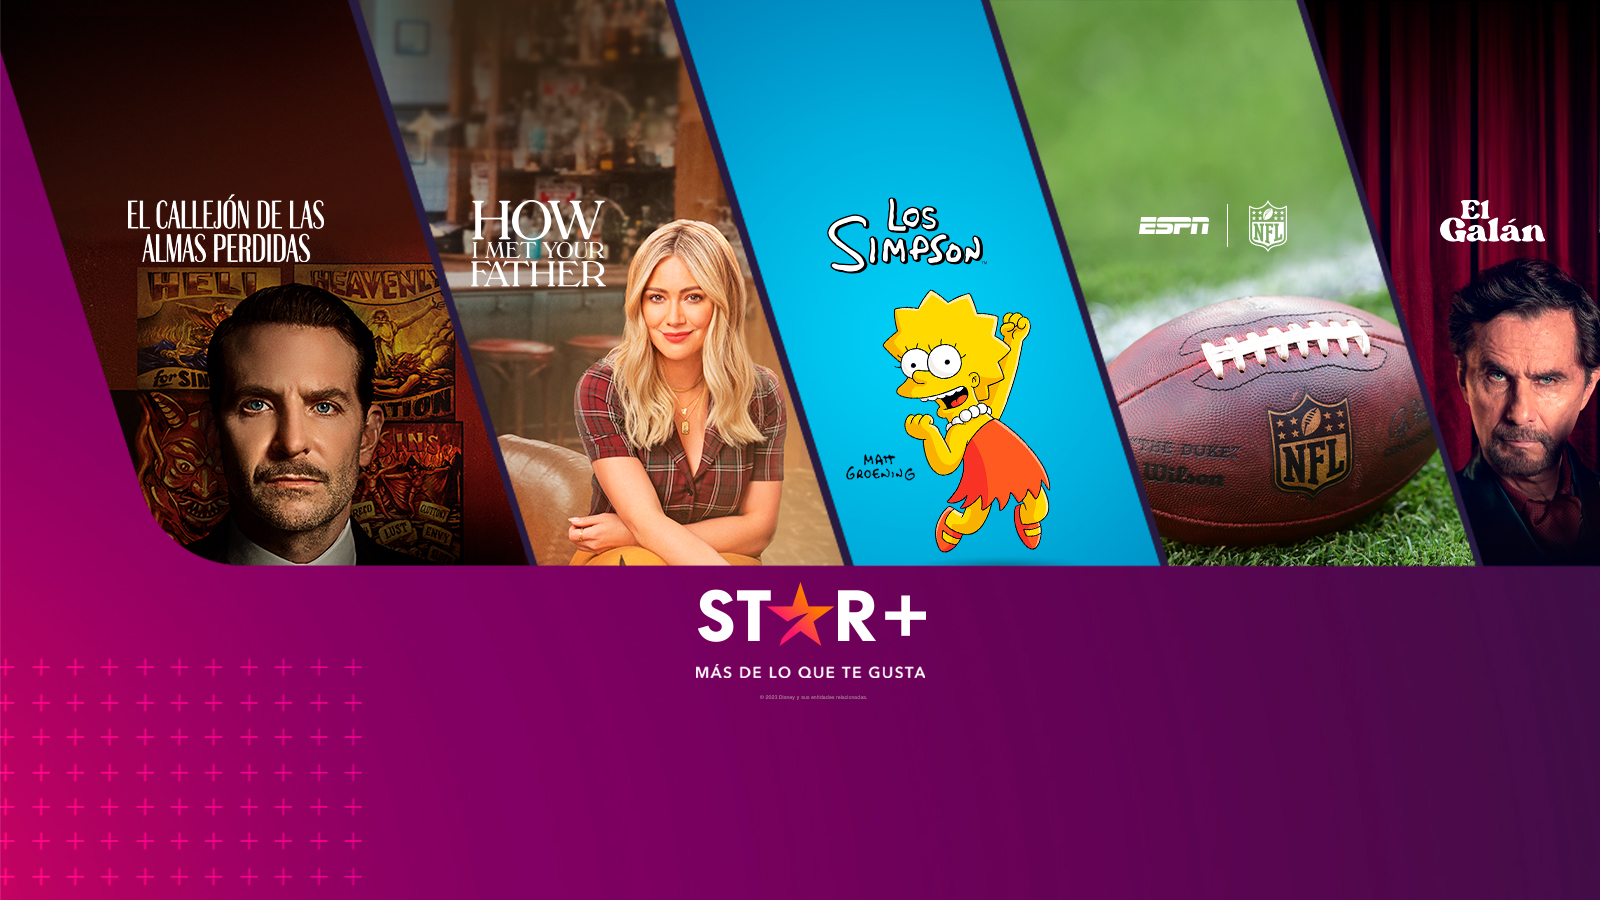 Películas y programas destacados de la plataforma Star+